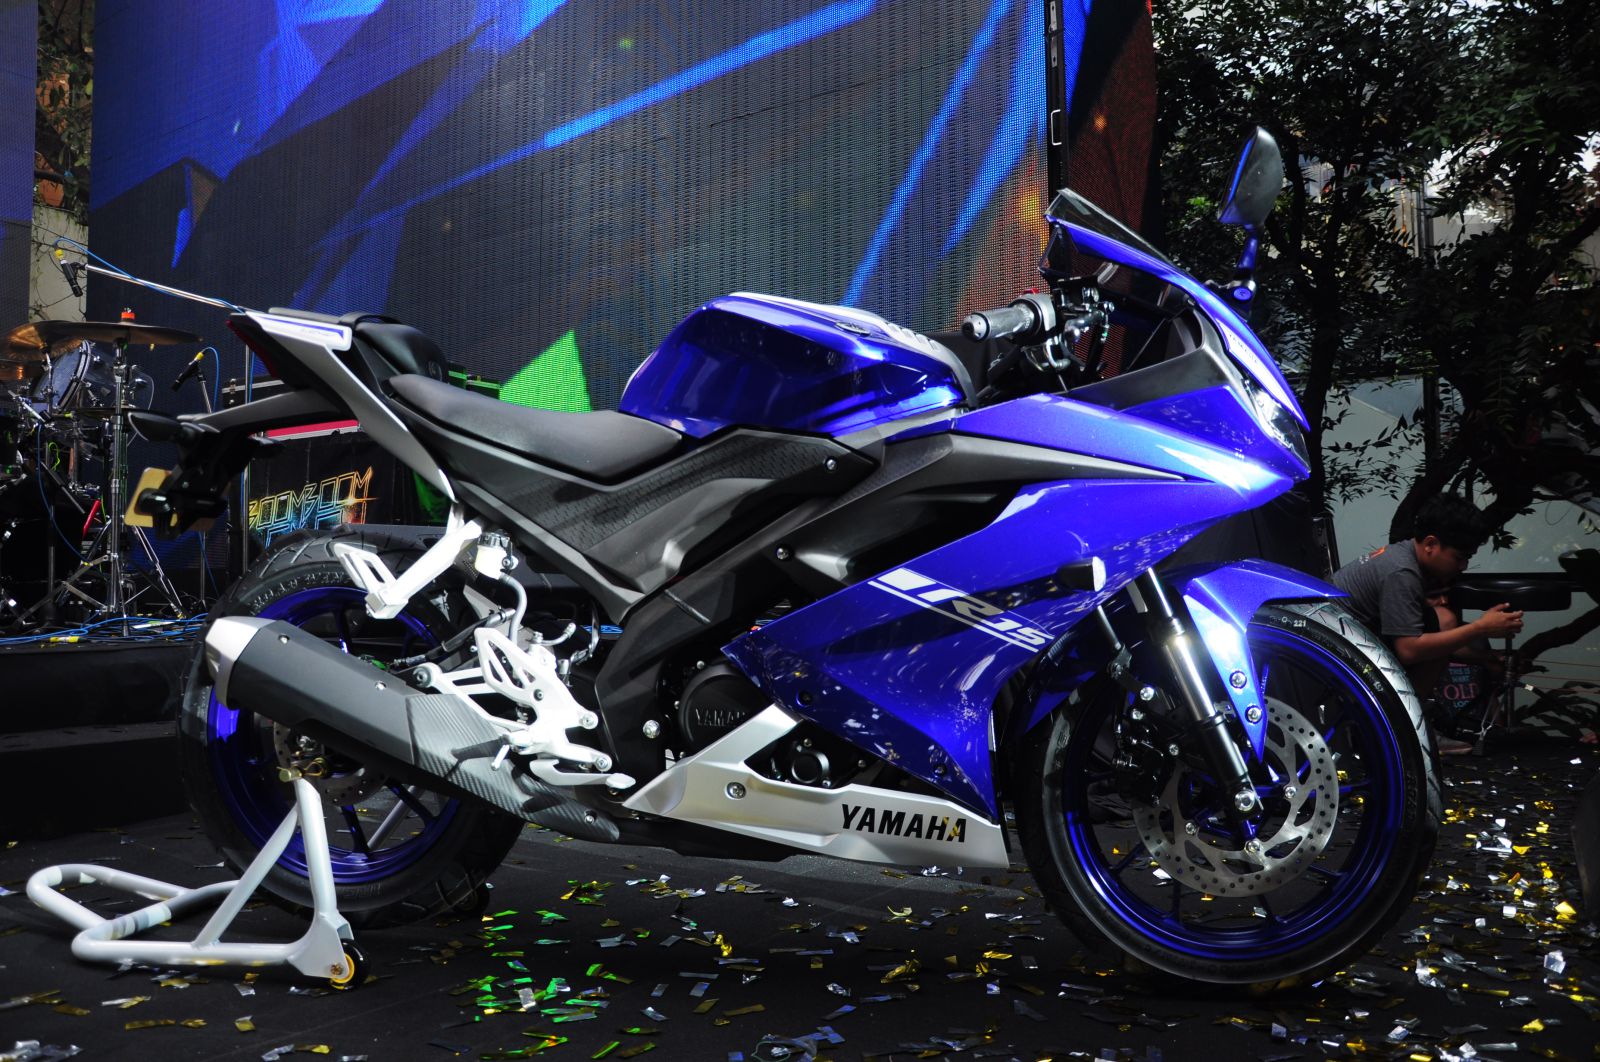 [YZF] Yamaha R15 2018 ยามาฮ่า อาร์15 ปี 2018 มาพร้อมสีใหม่ รีวิว ราคา ...